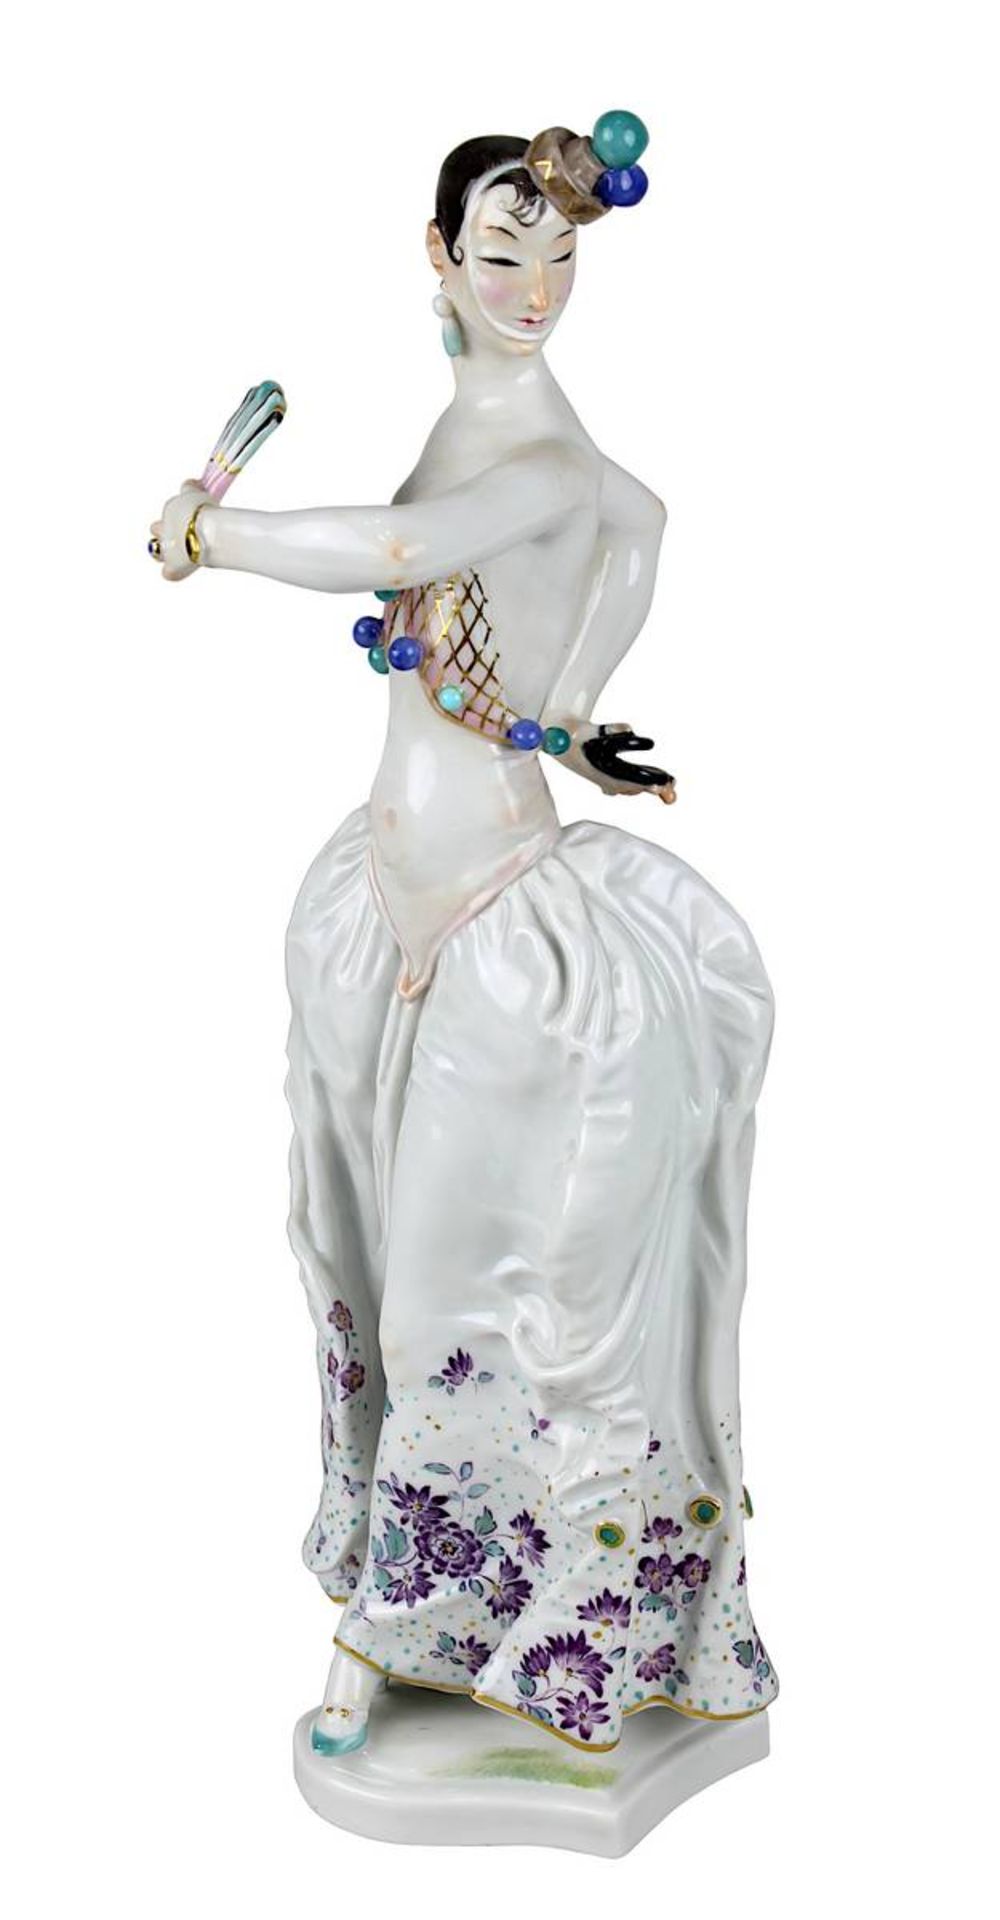 Meissen Porzellanfigur Spanische Tänzerin, 1. Wahl, Entwurf Paul Scheurich 1931, ausgeformt 1983 als